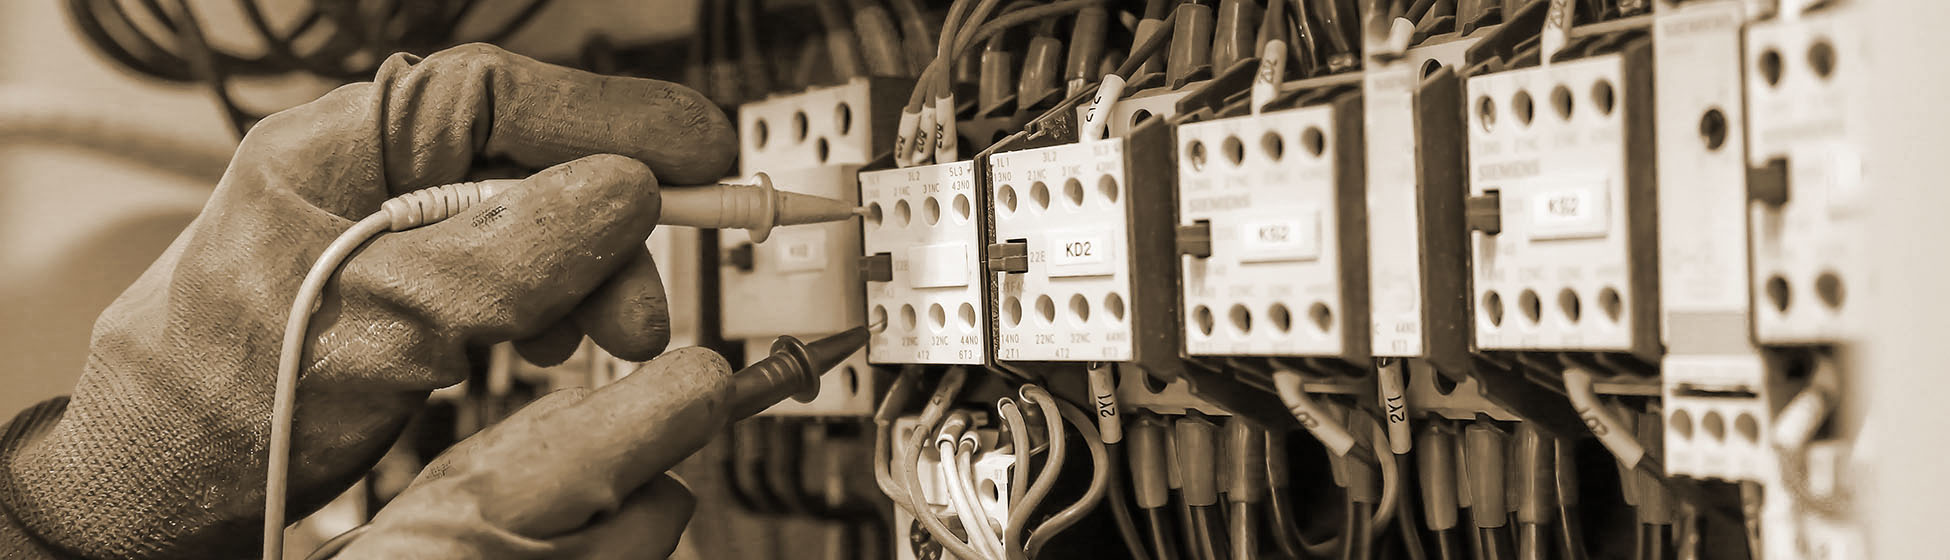 Mise aux normes électriques obligatoire